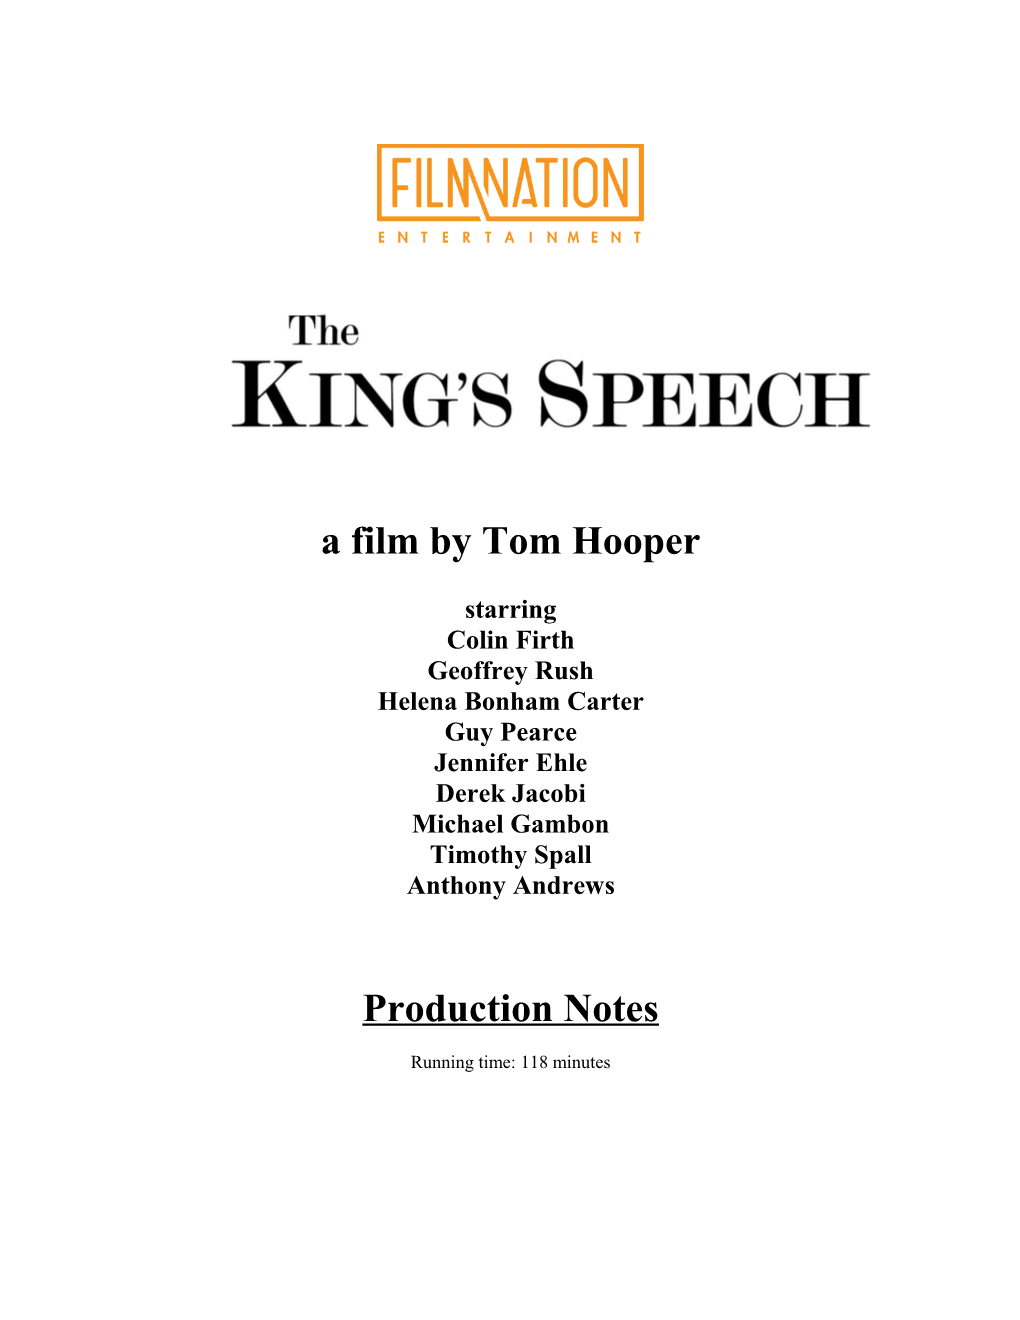 A Film by Tom Hooper